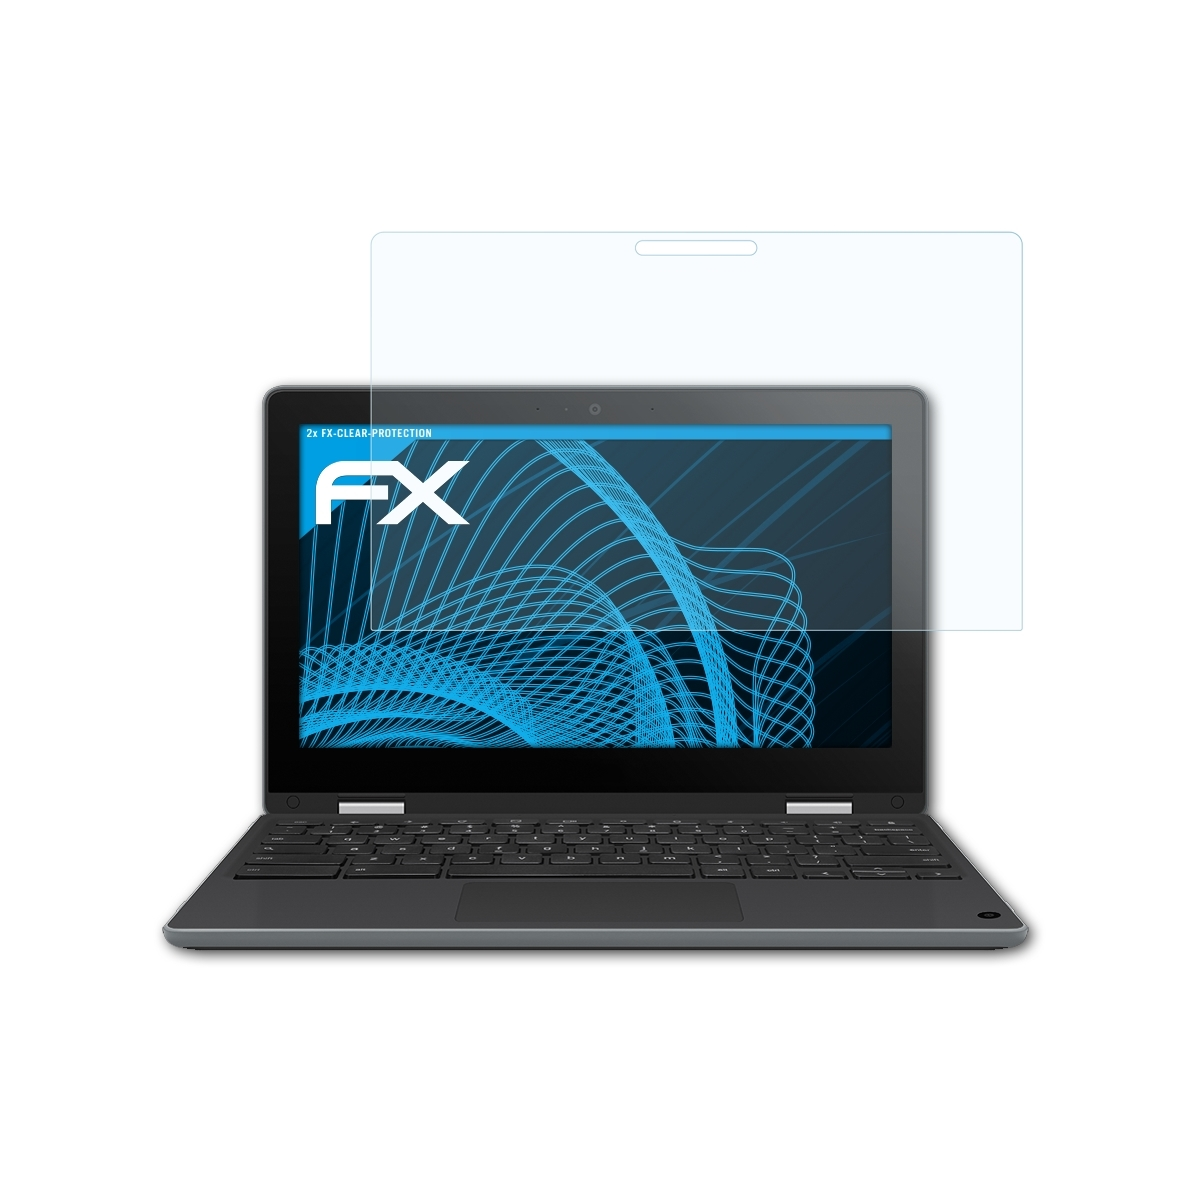 ATFOLIX Asus 2x FX-Clear Chromebook Displayschutz(für Flip (C214MA-BW0163))